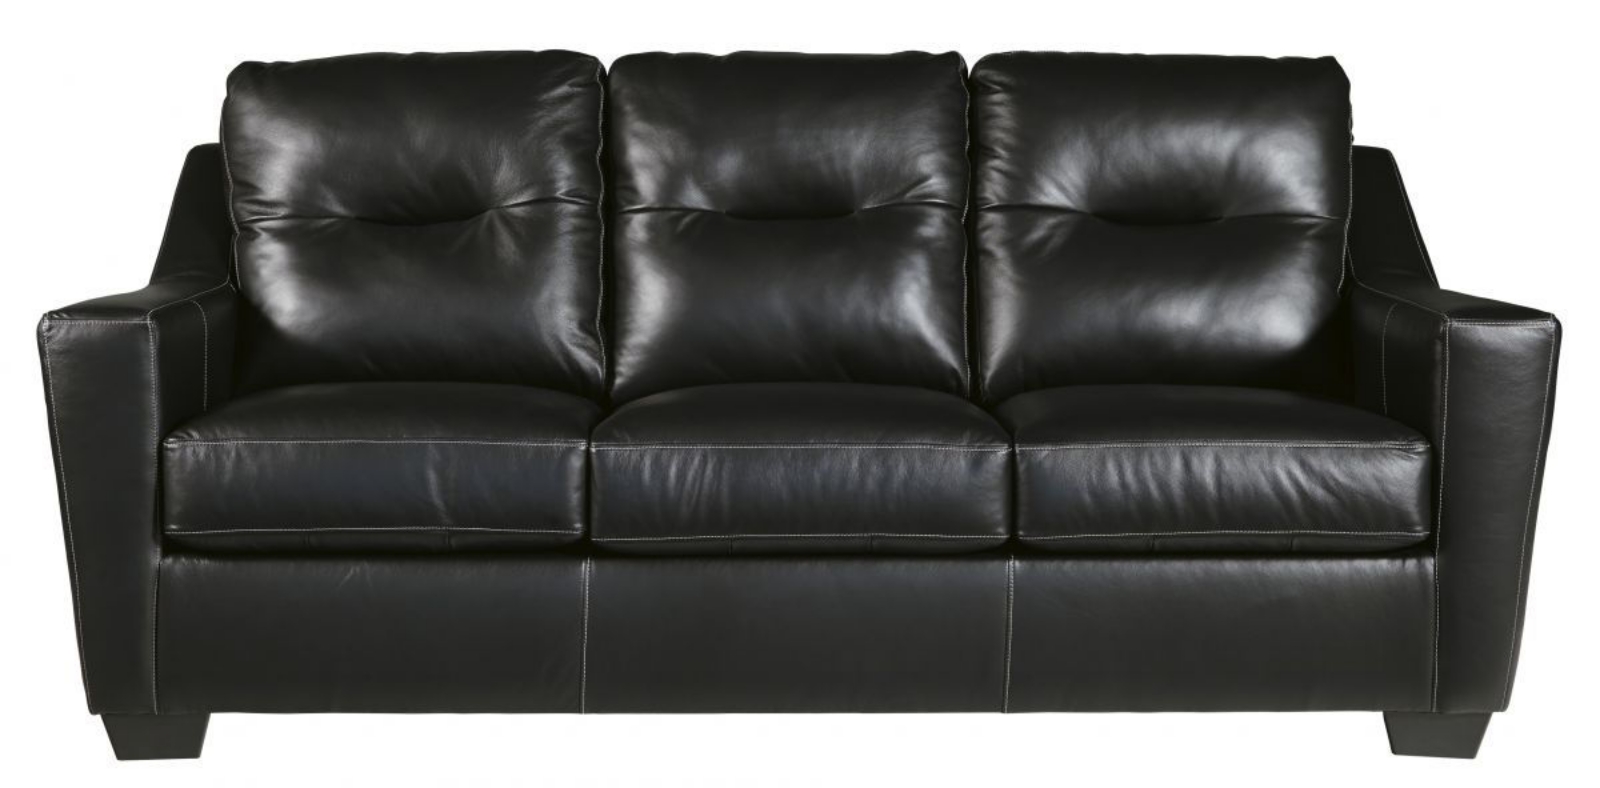 Picture of Kensbridge Sofa